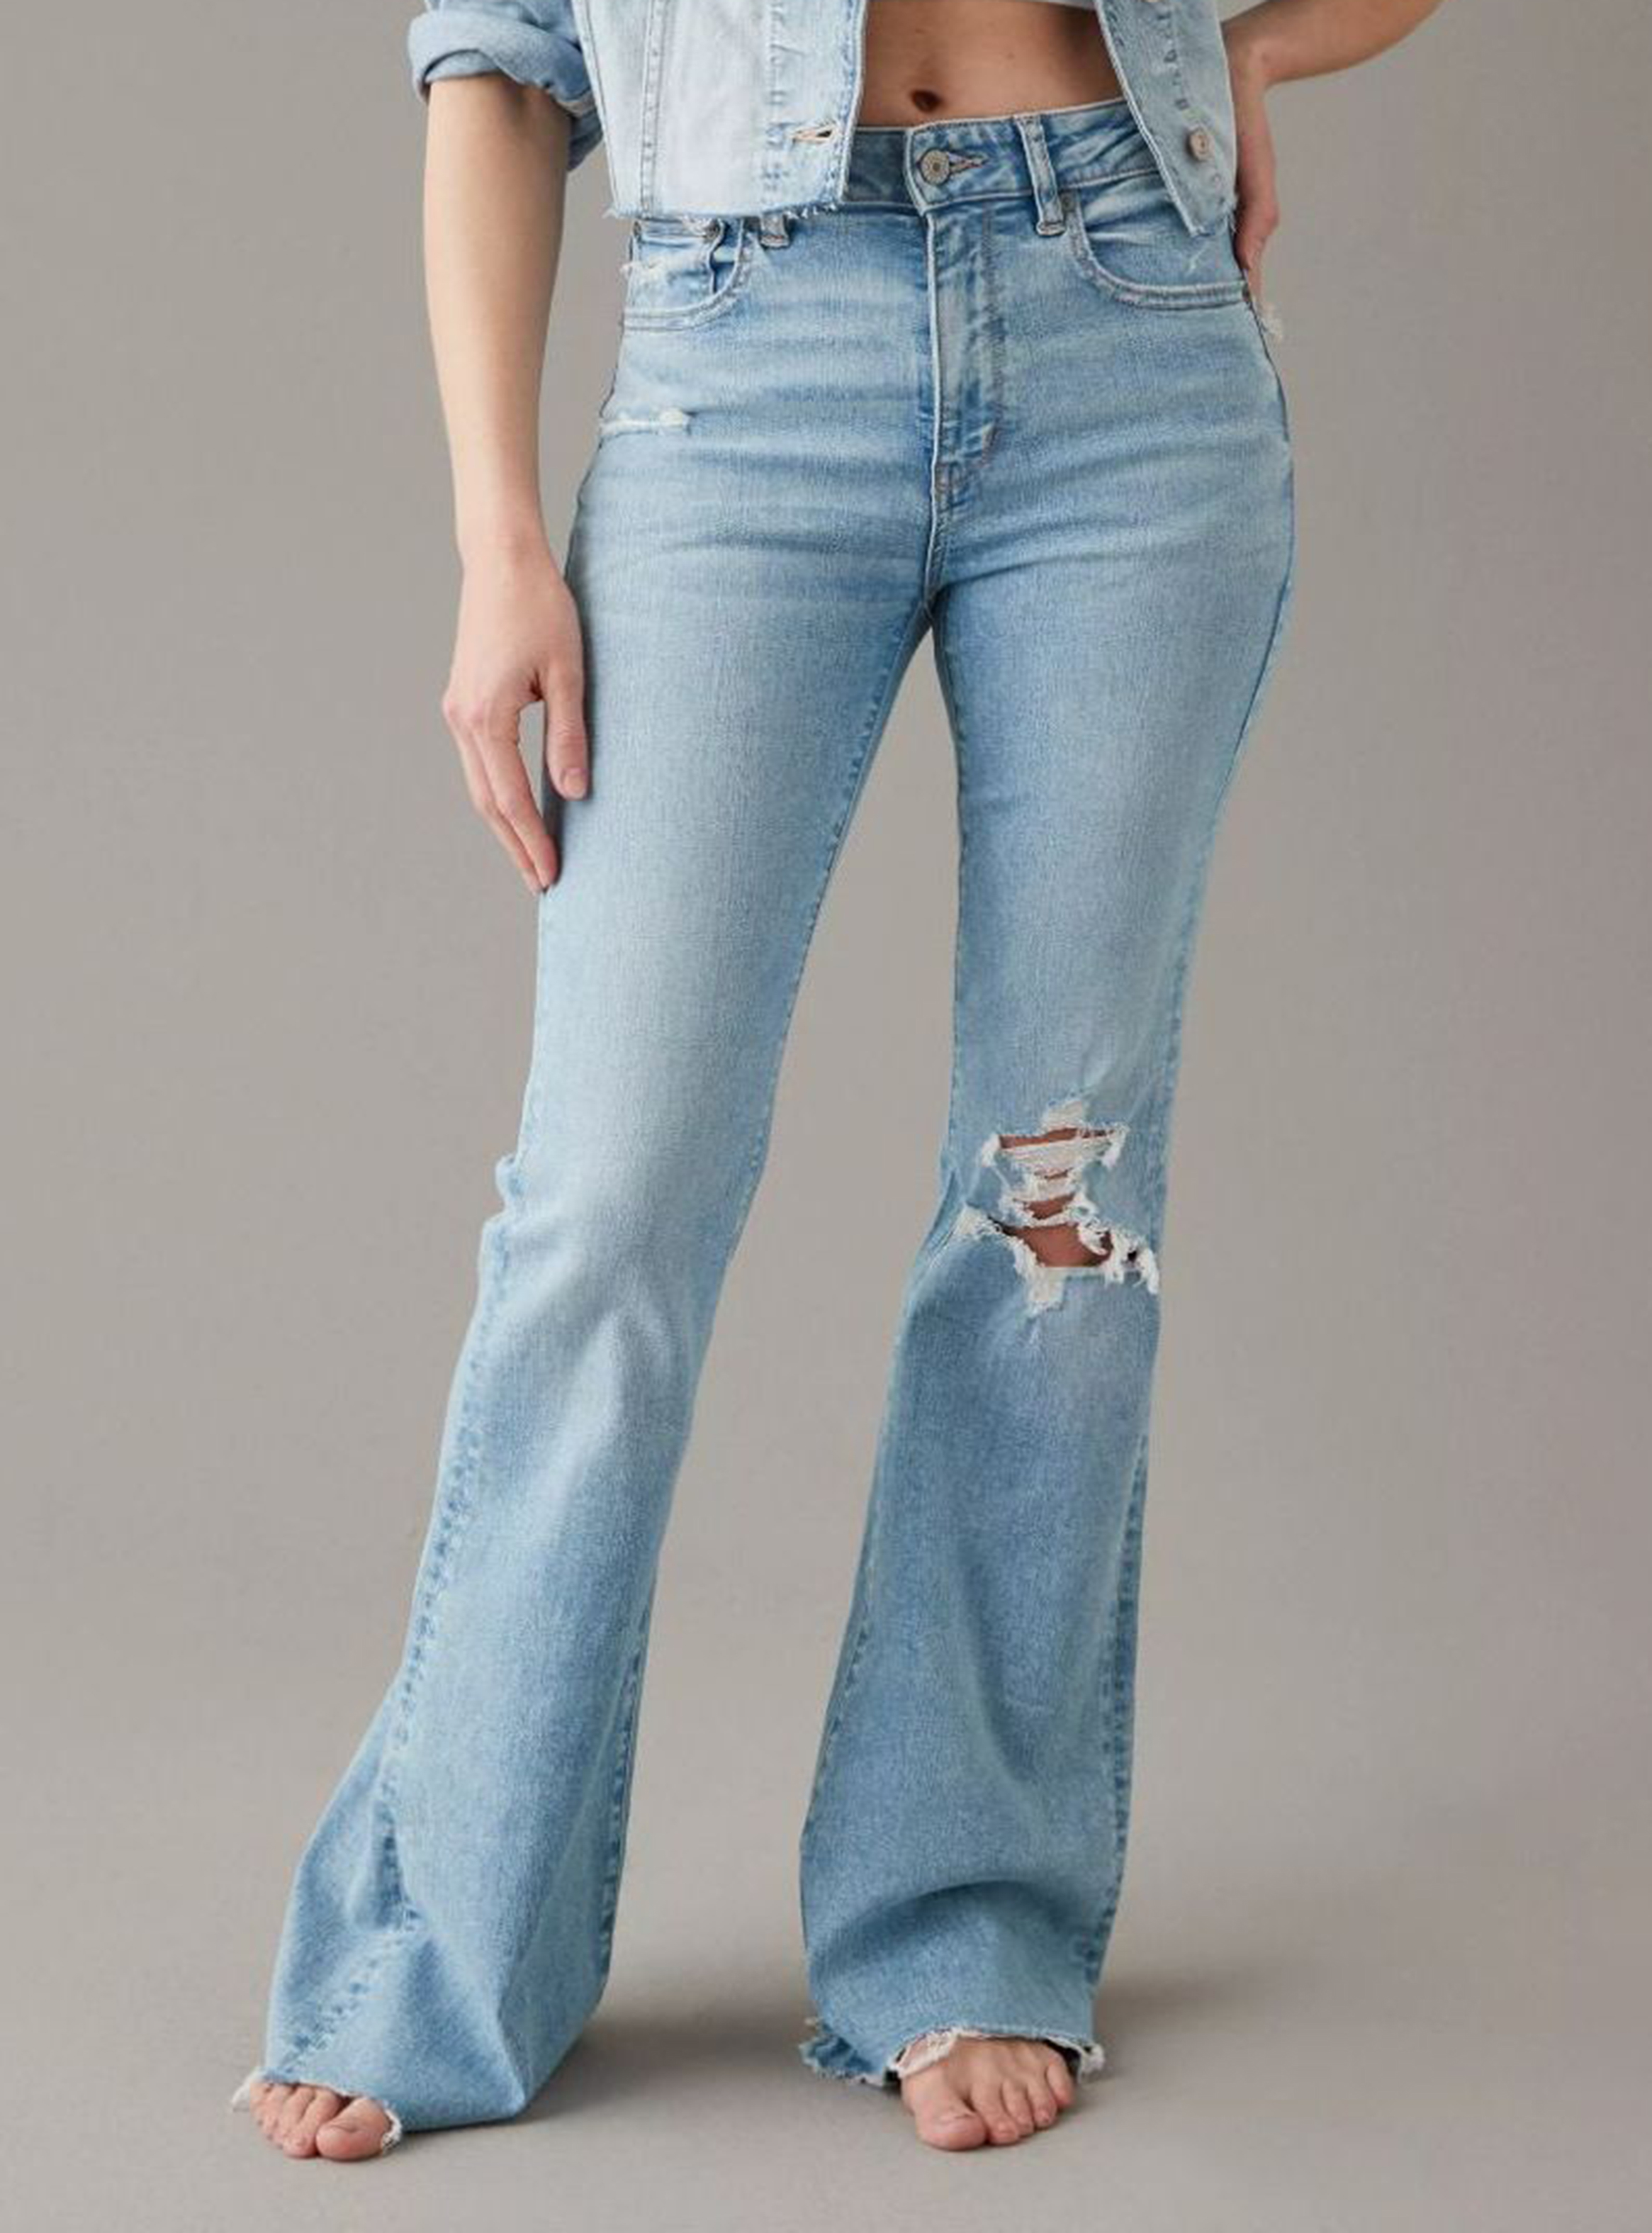 Jeans Next con Tiro Alto Diseño Rasgado